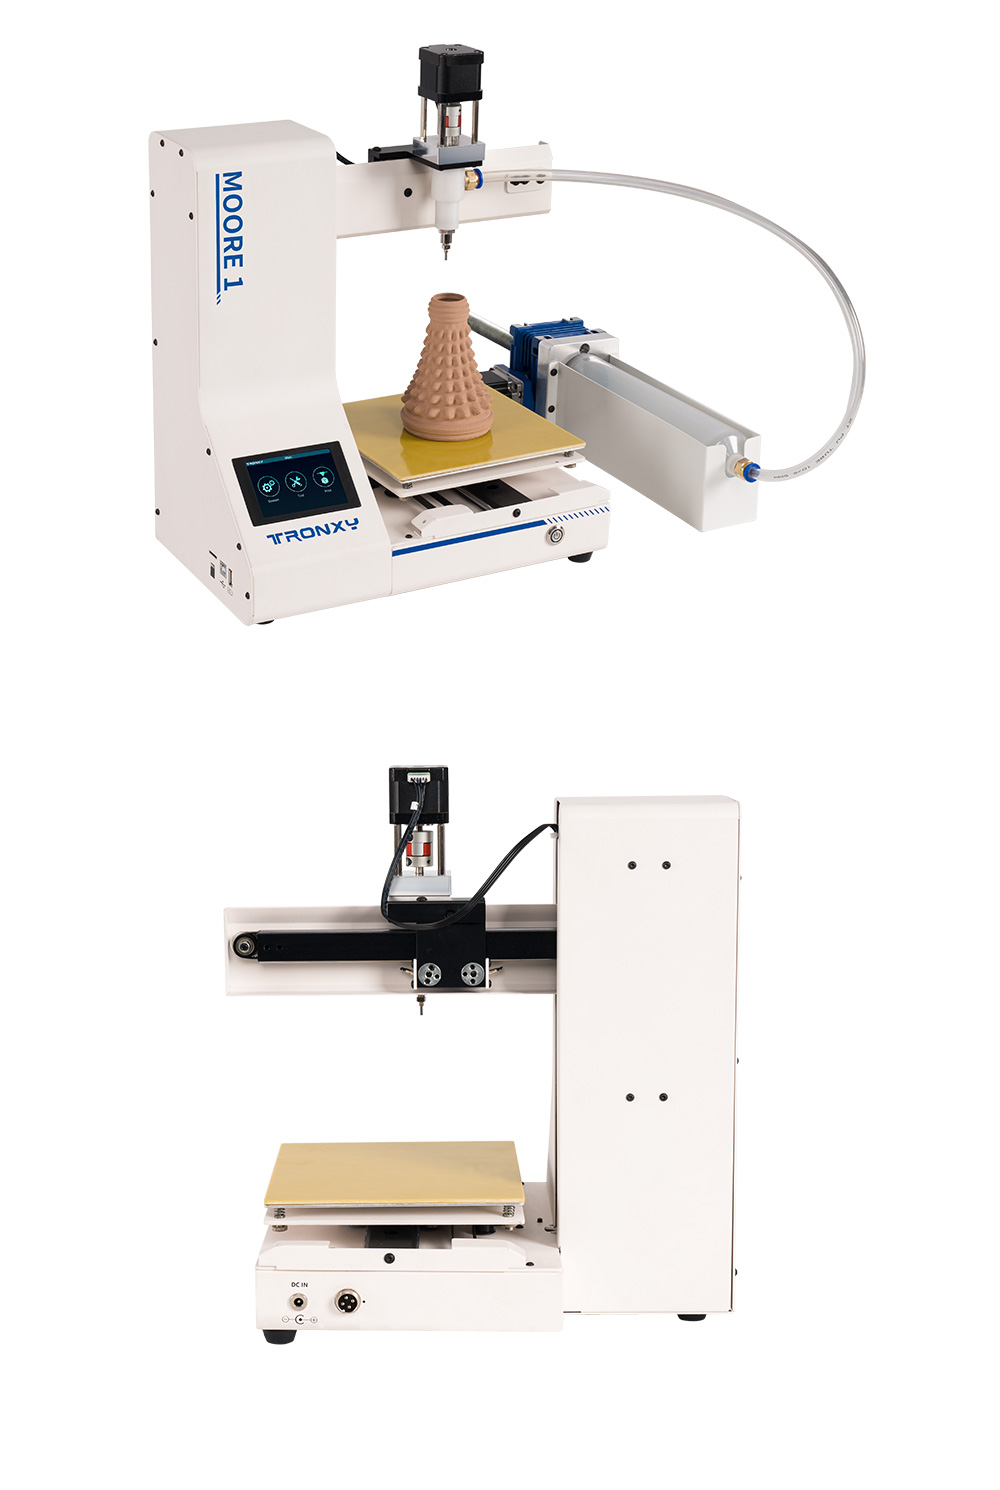 Tronxy Moore 1 Mini imprimante 3D en argile, vitesse d'impression de 40 mm/s, impression de reprise, TMC2209, 180*180*180mm